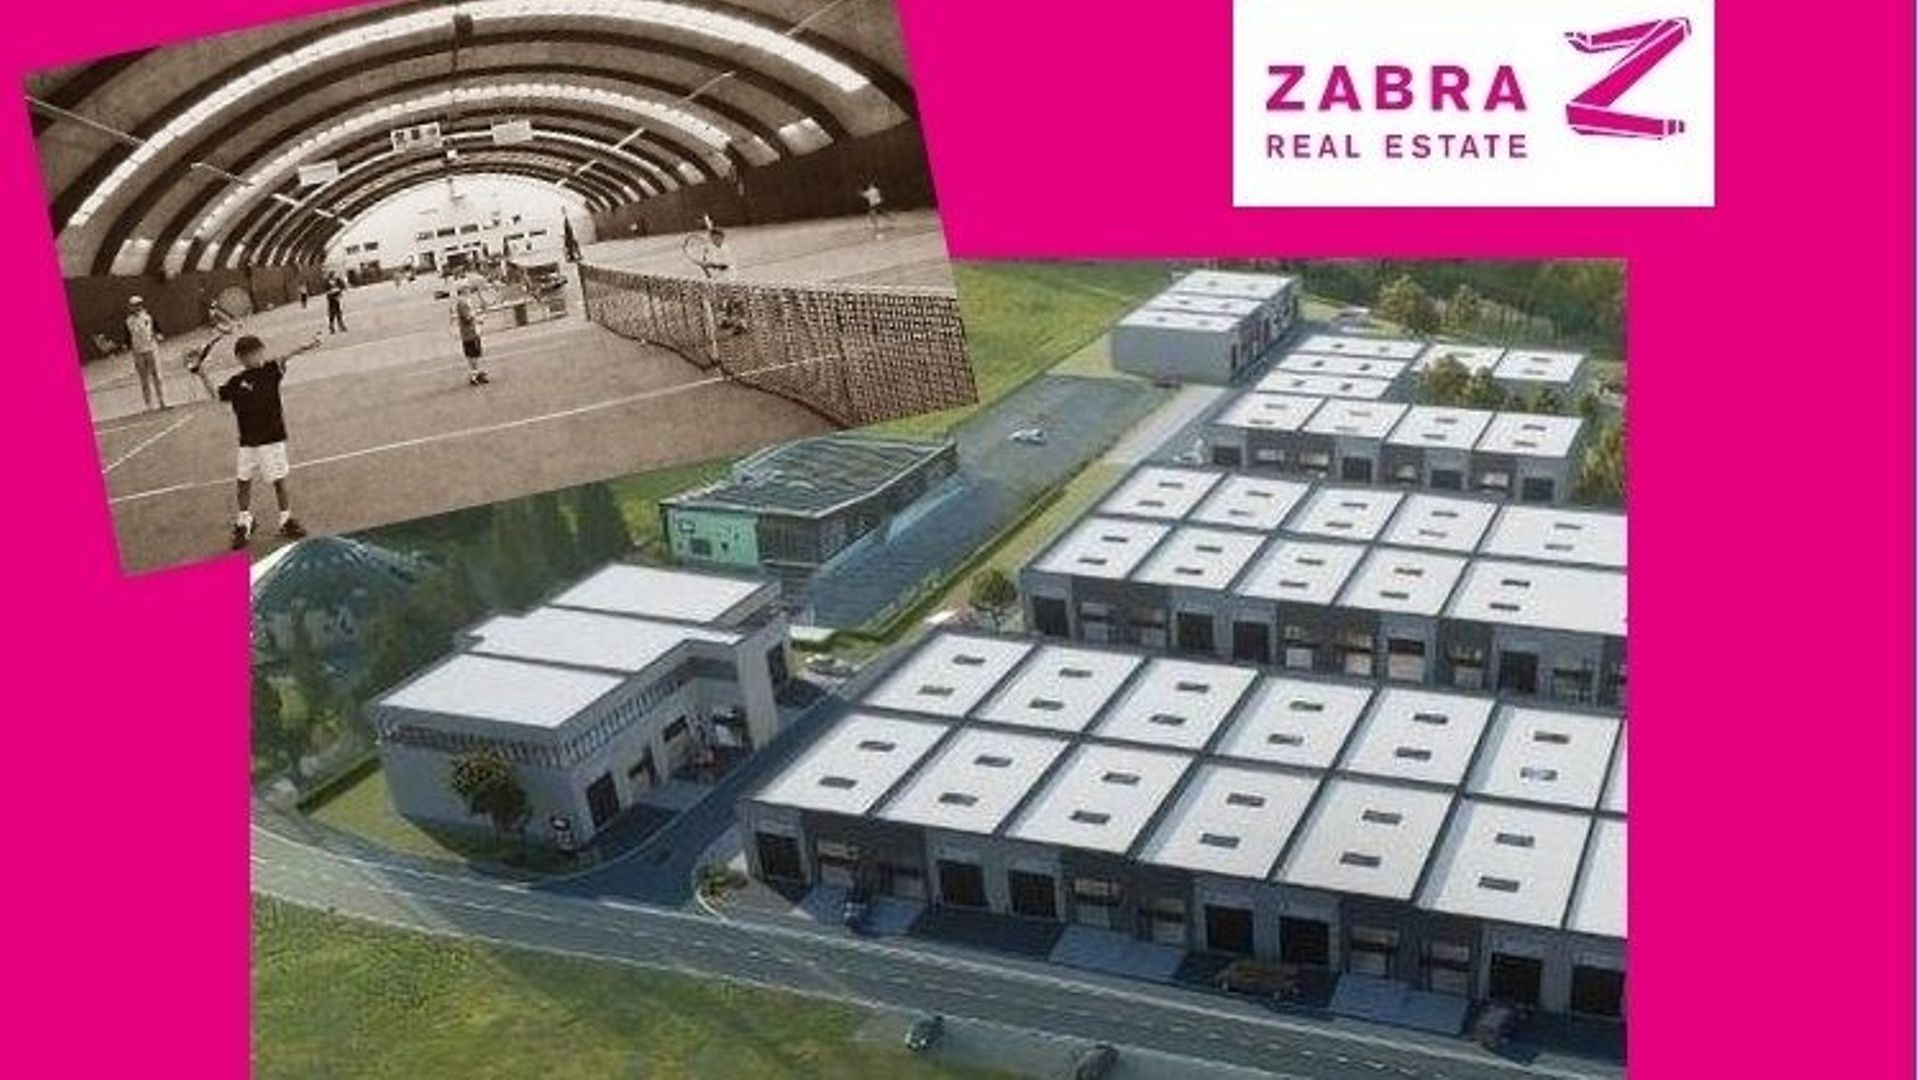 Le groupe gantois Zabra semble multiplier les investissements en région liégeoise